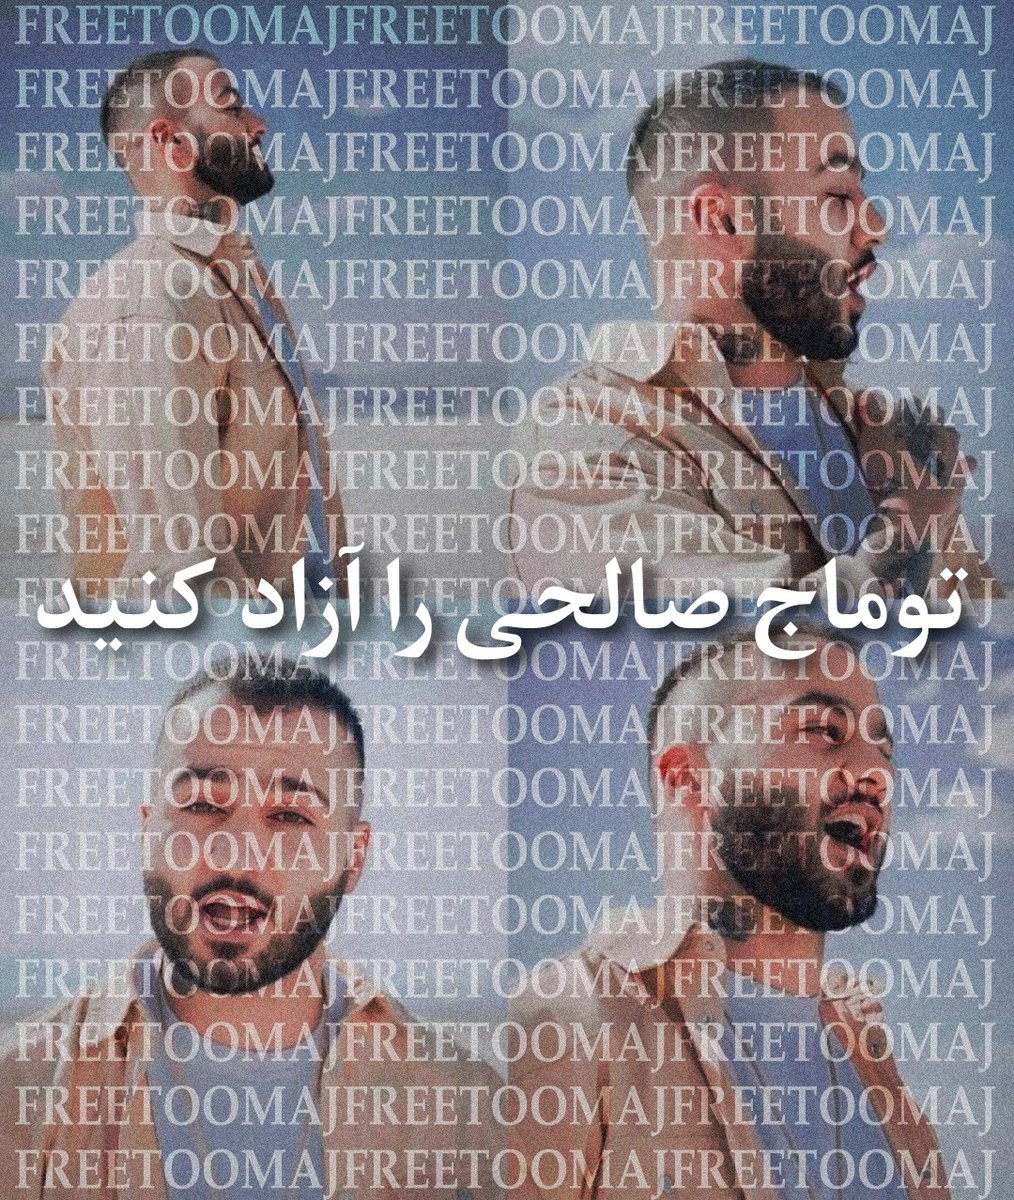 ما از هر طریقی که بتونیم اعتراض خودمون رو به این حکم مسخره و ناعادلانه نشون میدیم #توماج_صالحی عزیز دل یک ایرانه توماج خانواده ماست ما عضو خانوادمون رو تنها نمیگذاریم. #FreeToomaj